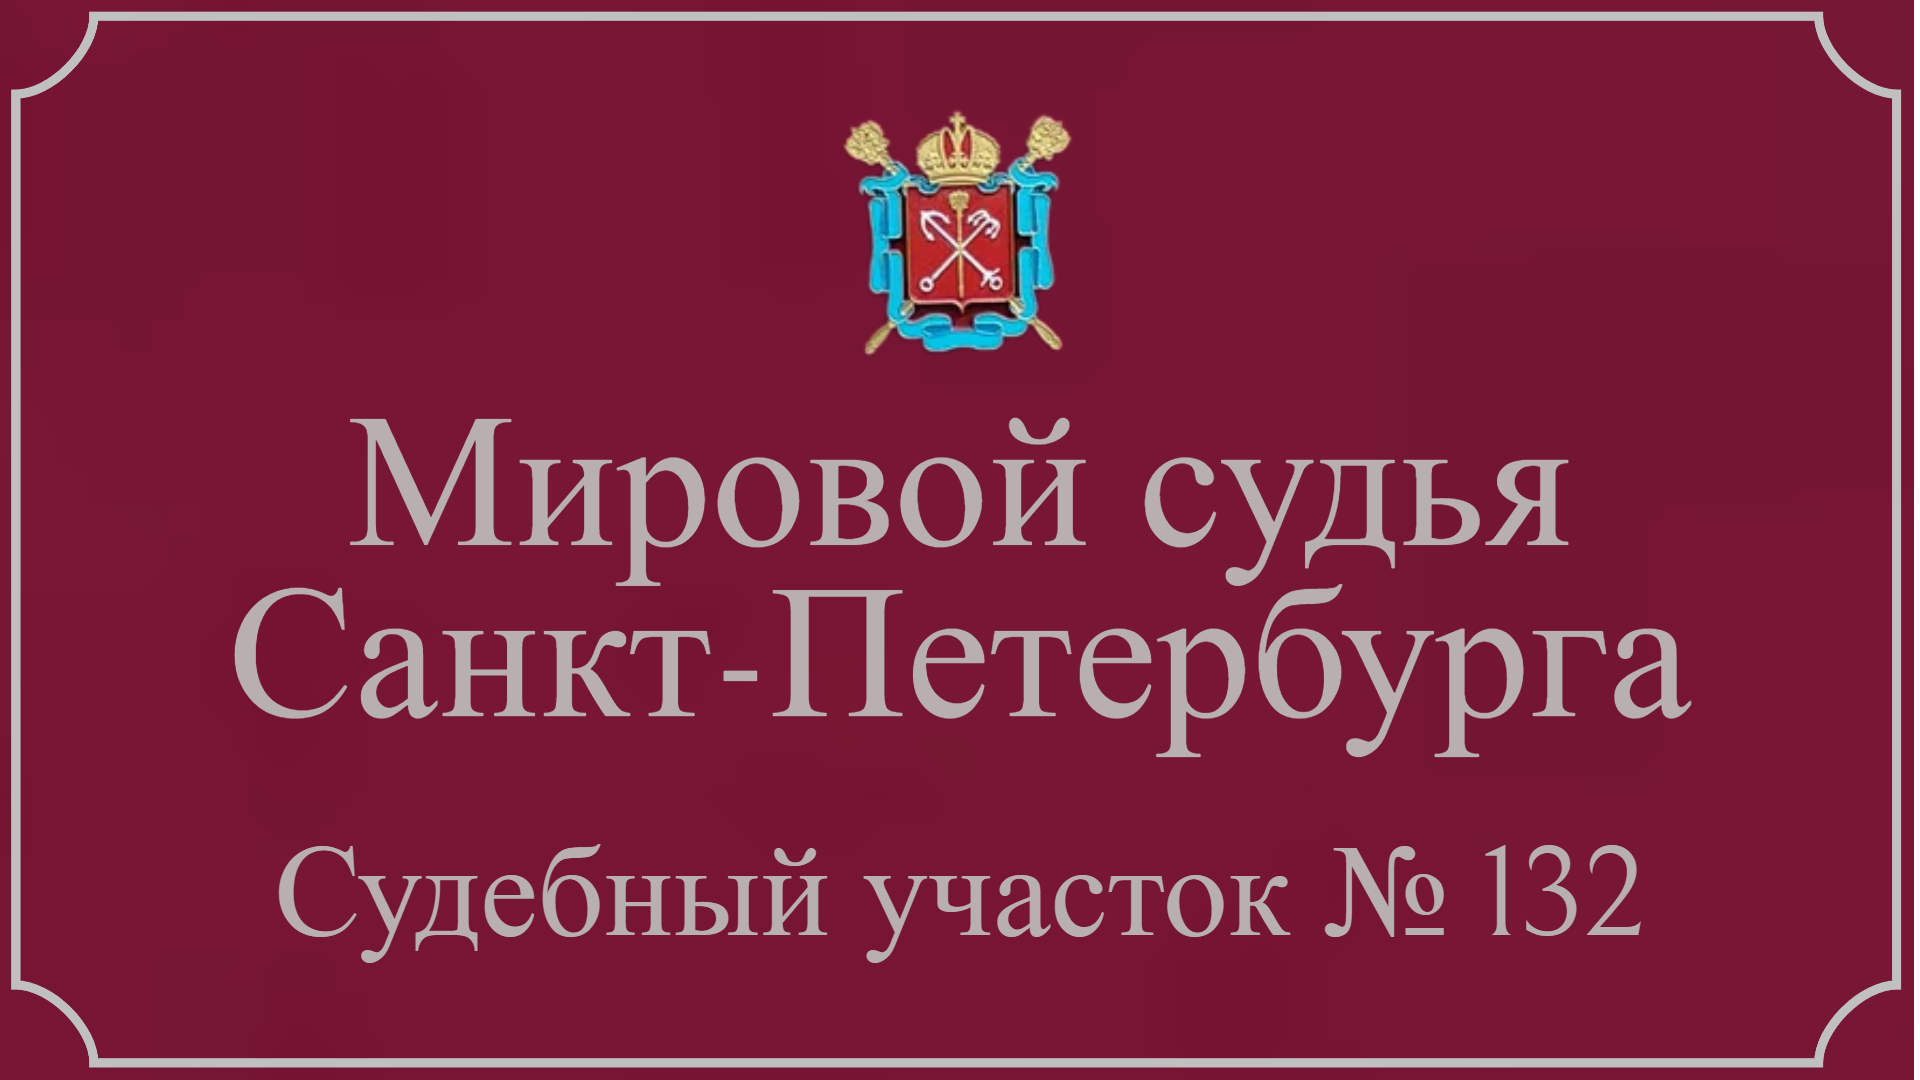 Информация по 132 судебному участку в Санкт-Петербурге.